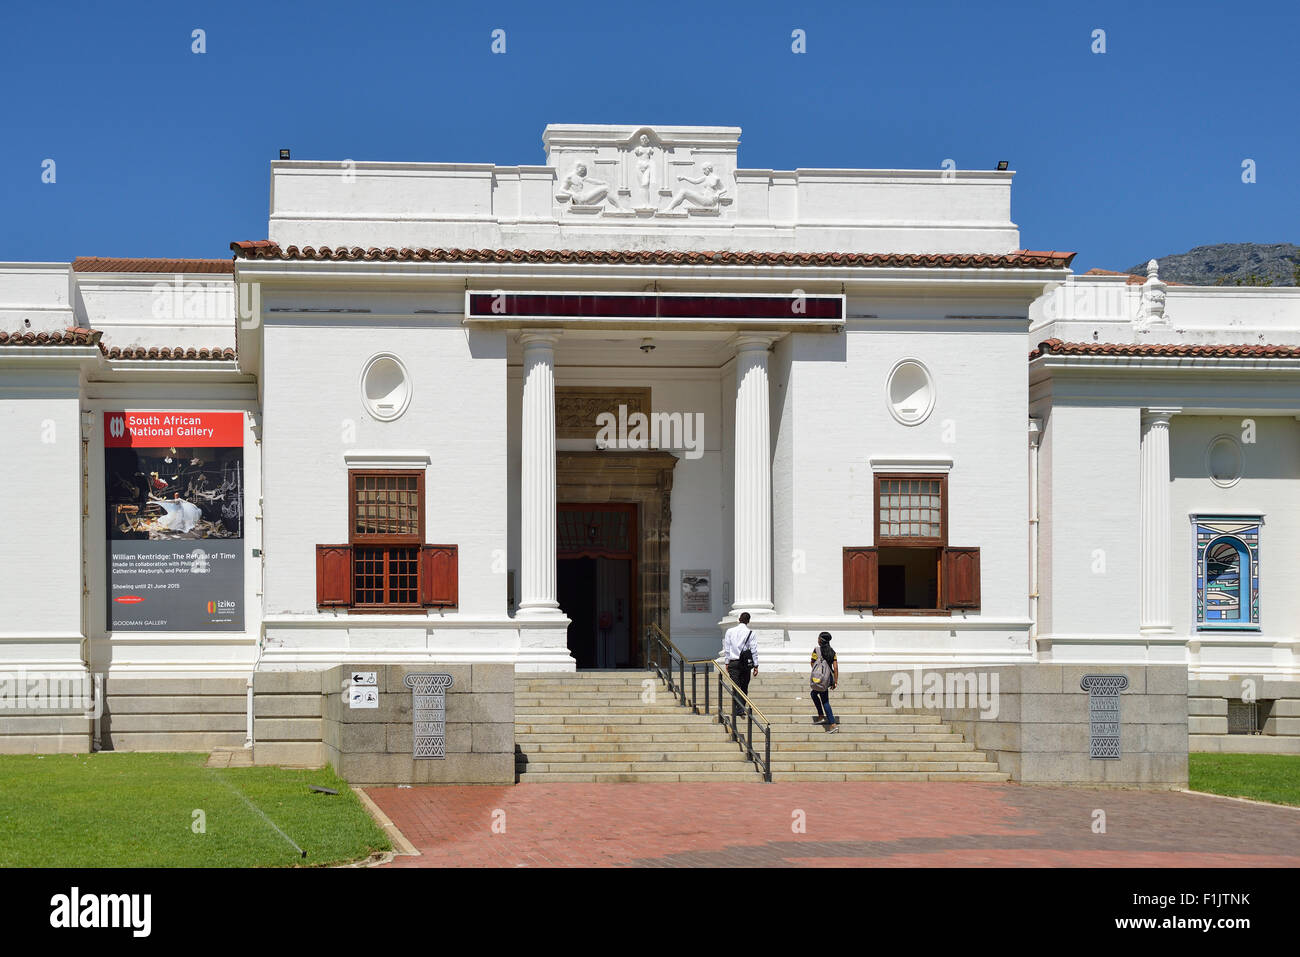 South African National Gallery, jardín de la compañía, Ciudad del Cabo, en la provincia de Western Cape, Sudáfrica Foto de stock